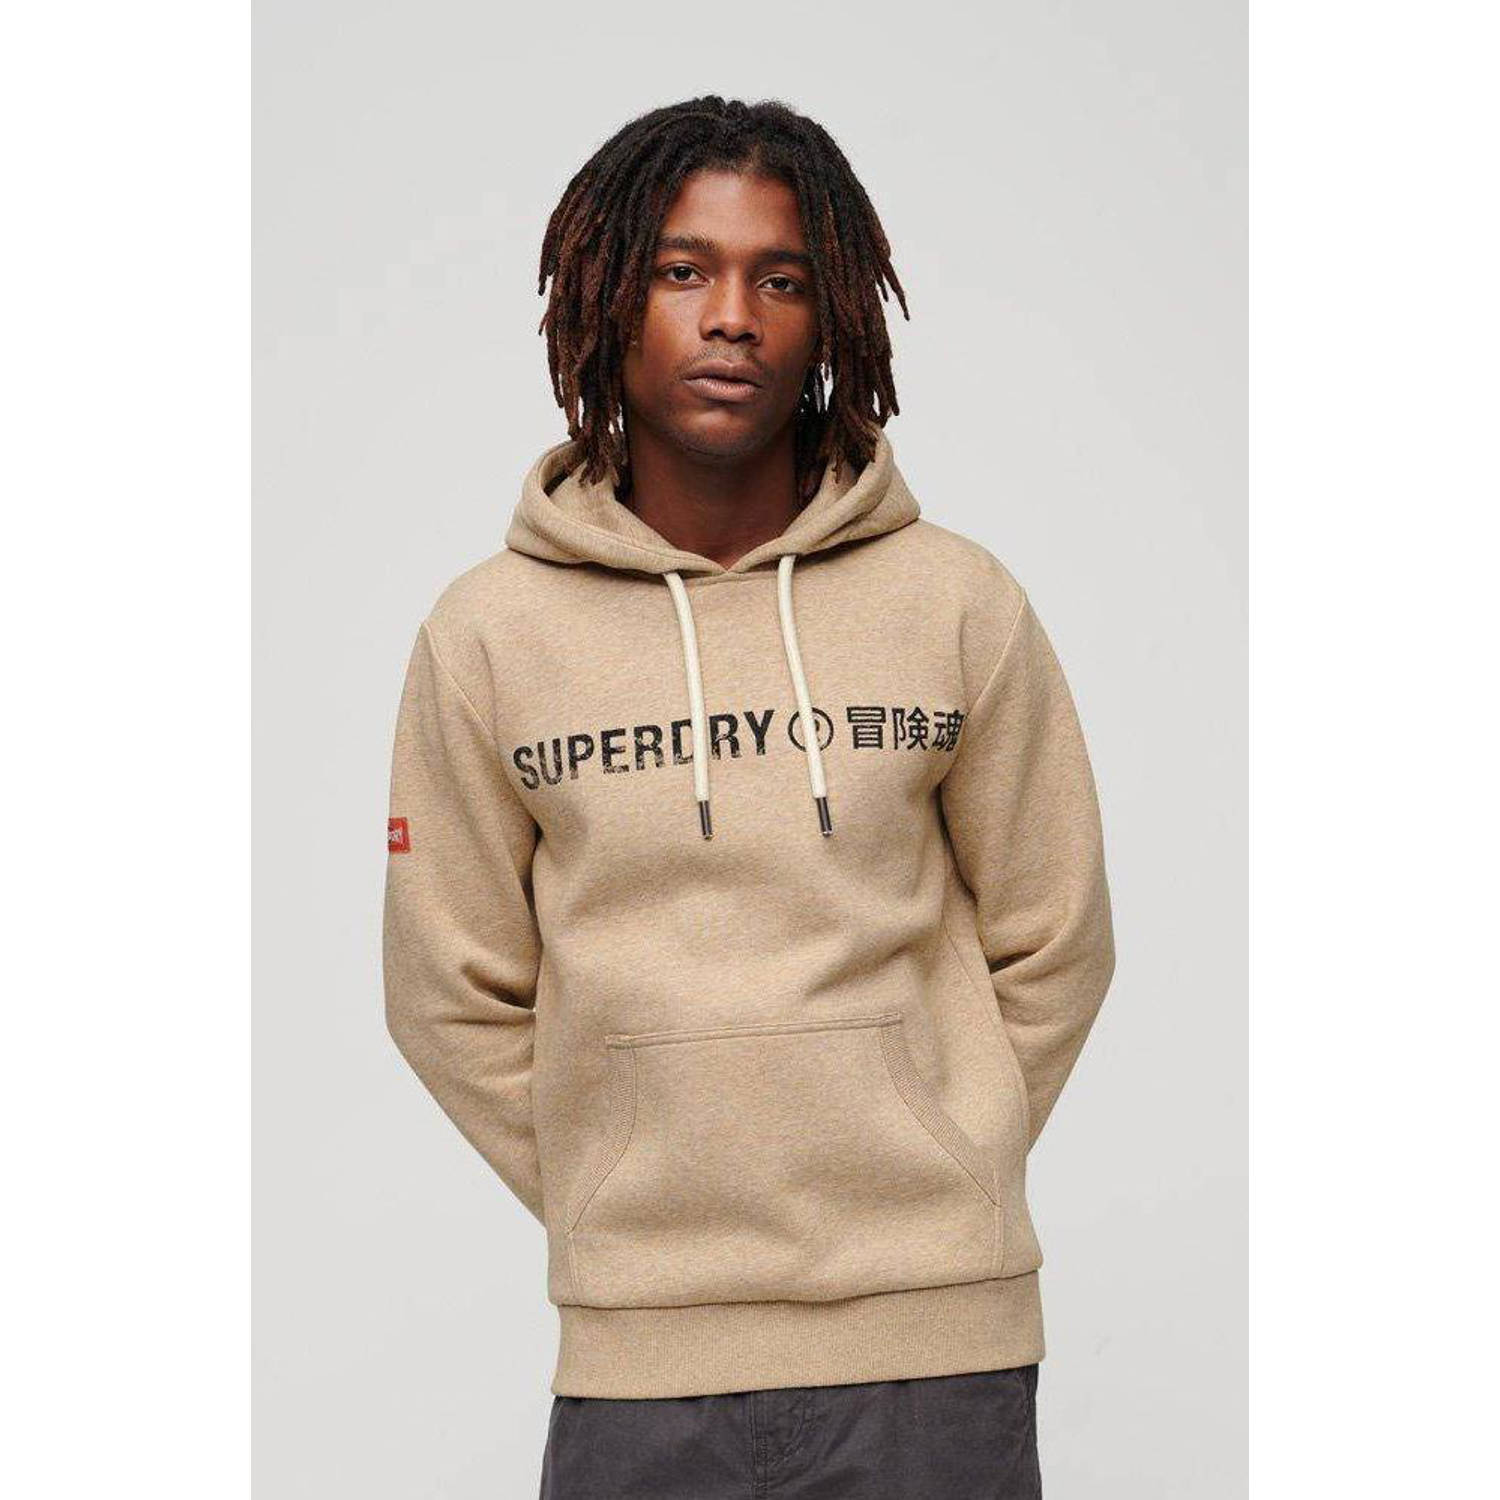 Superdry hoodie Vintage Workwear met logo tan brown fleck marl